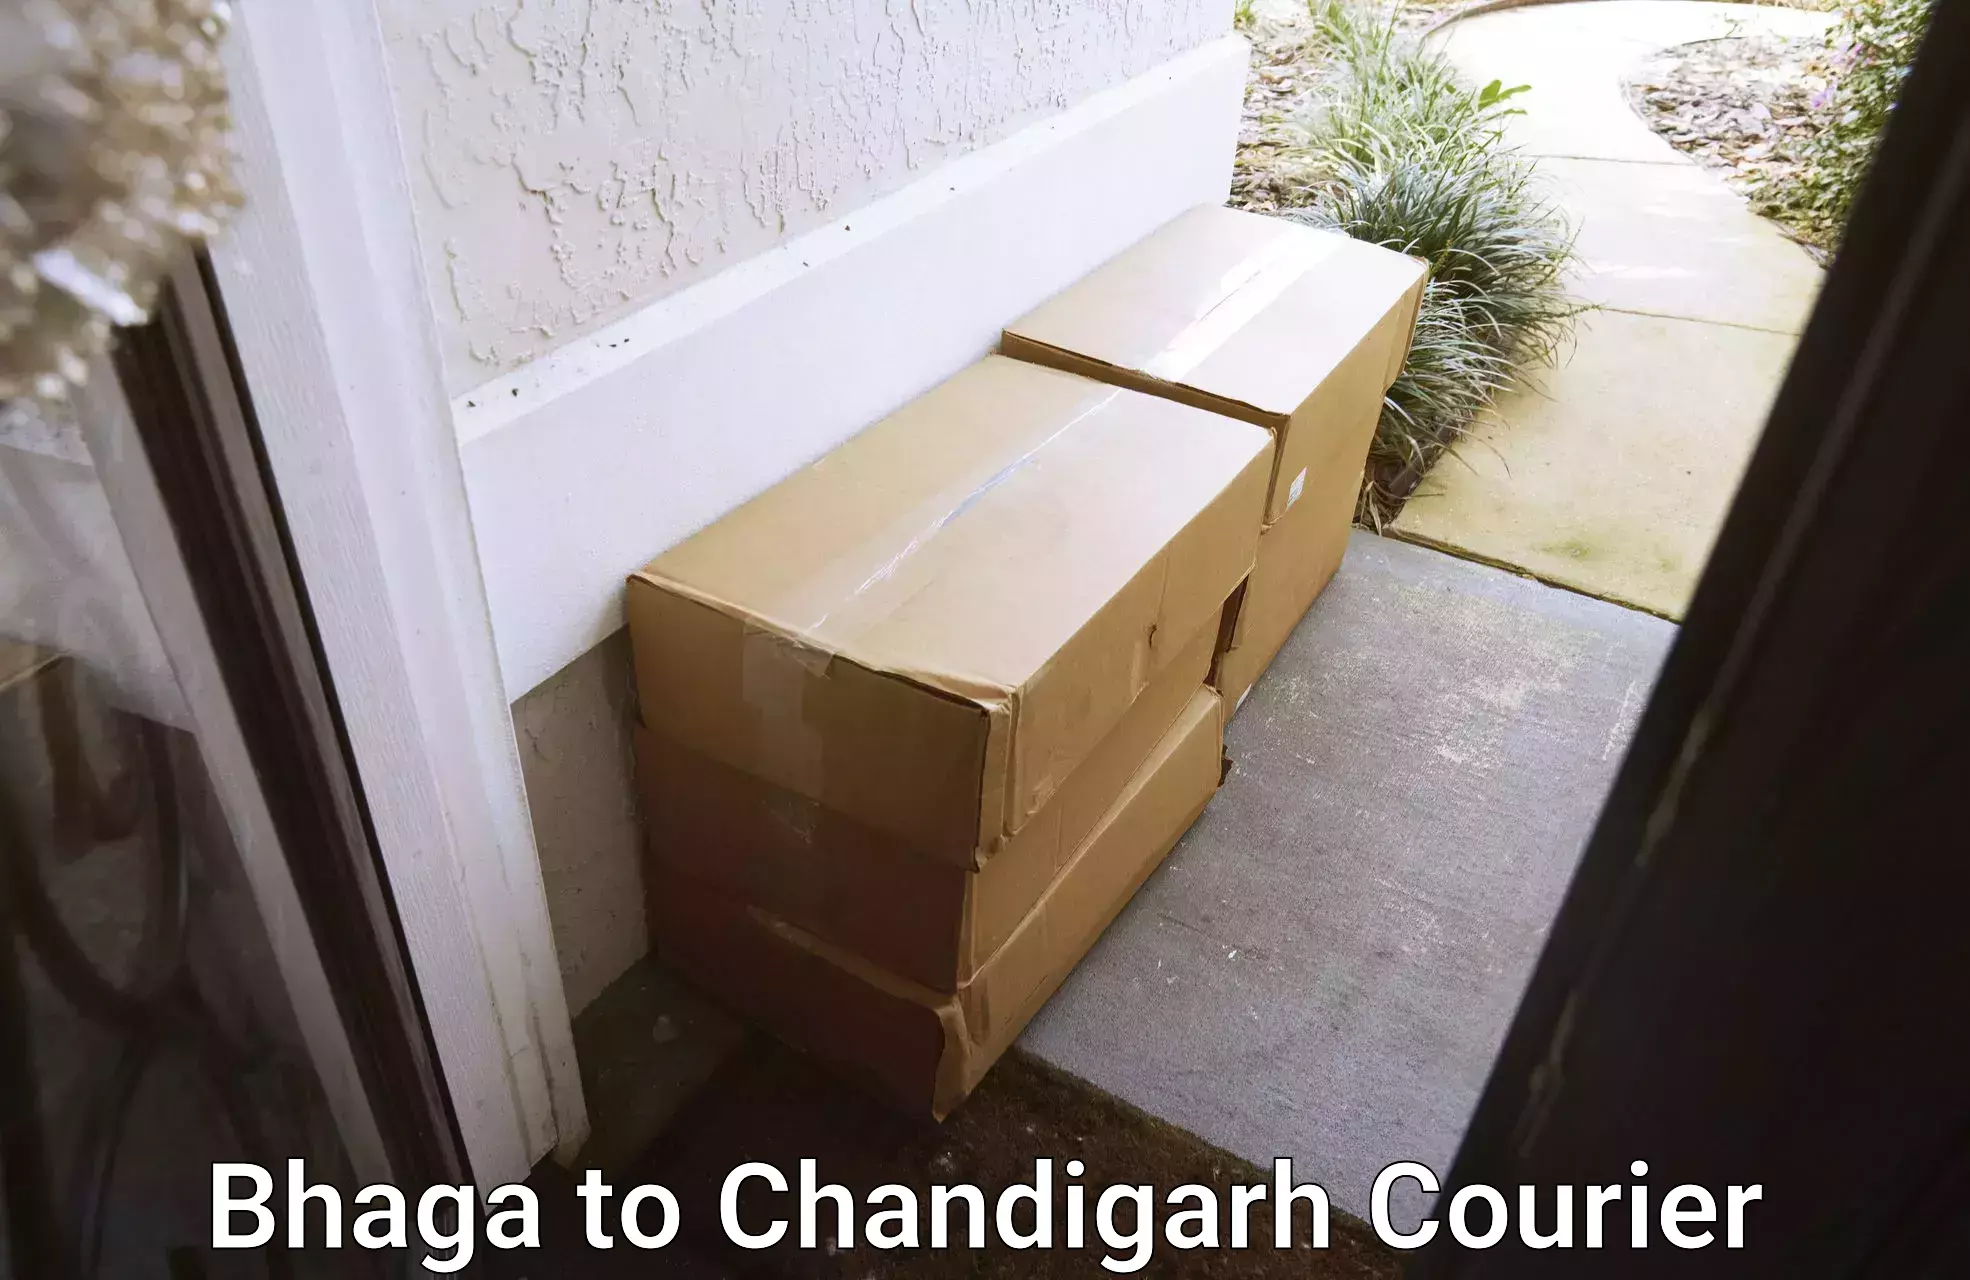 Custom courier packaging Bhaga to Chandigarh